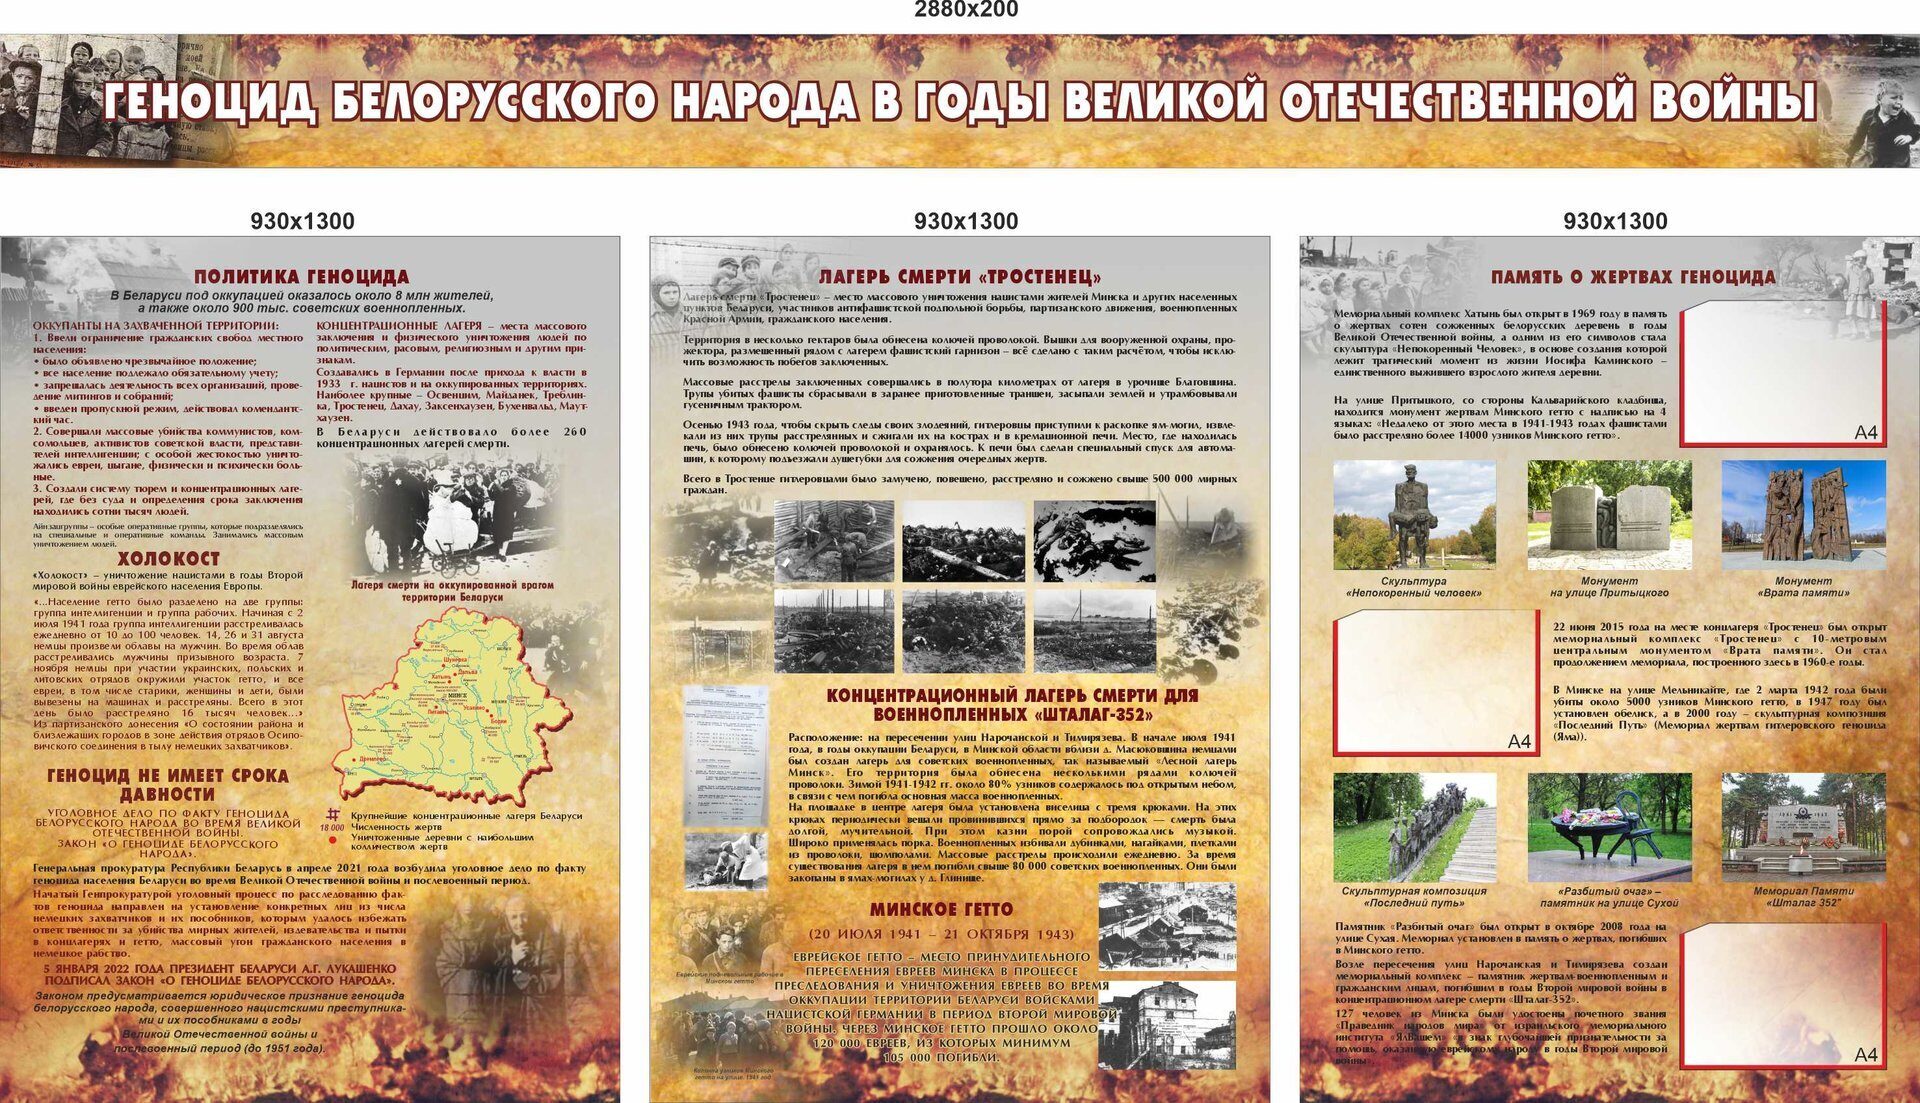 1856 ВОВ, геноцид белорусского народа, лагерь смерти, память о жертвах